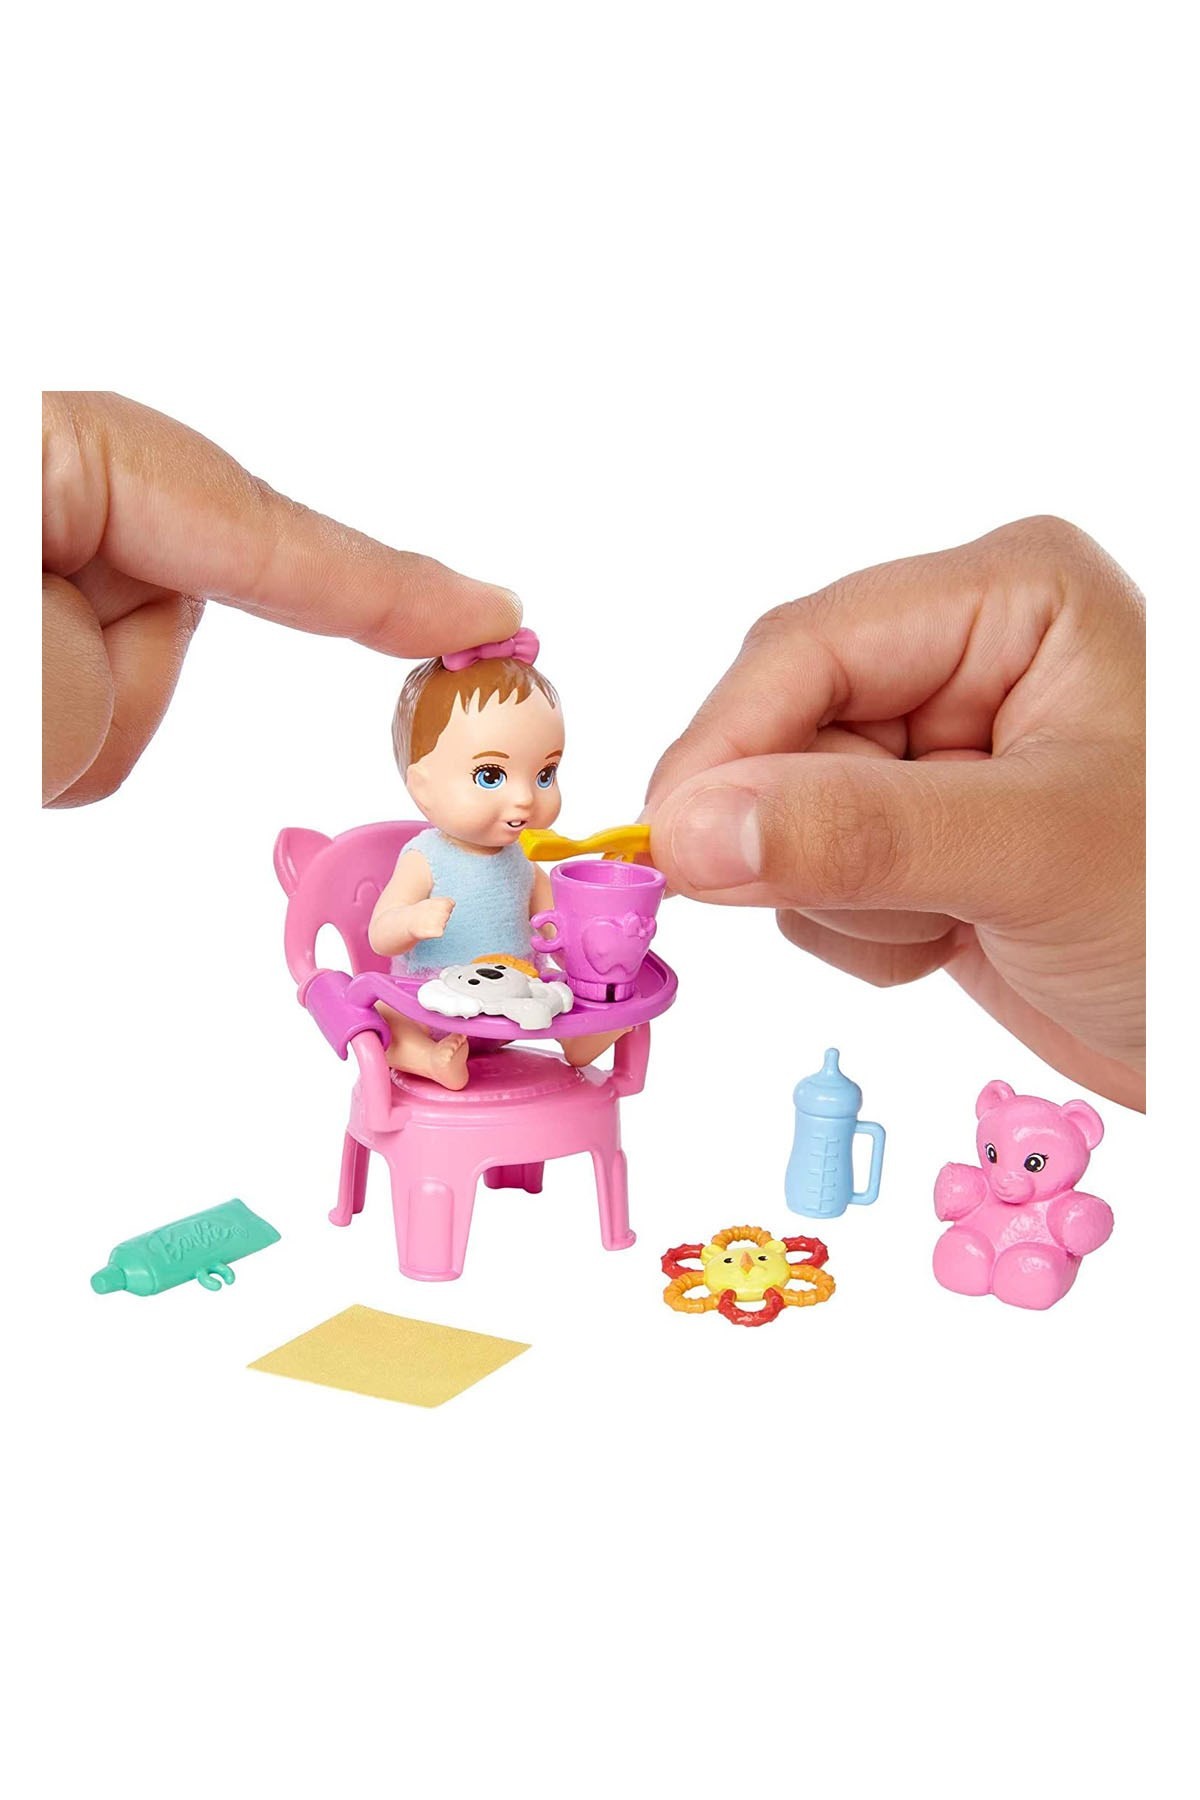 Barbie Bebek Bakıcısı Özellikli Minik Bebekler HJY29